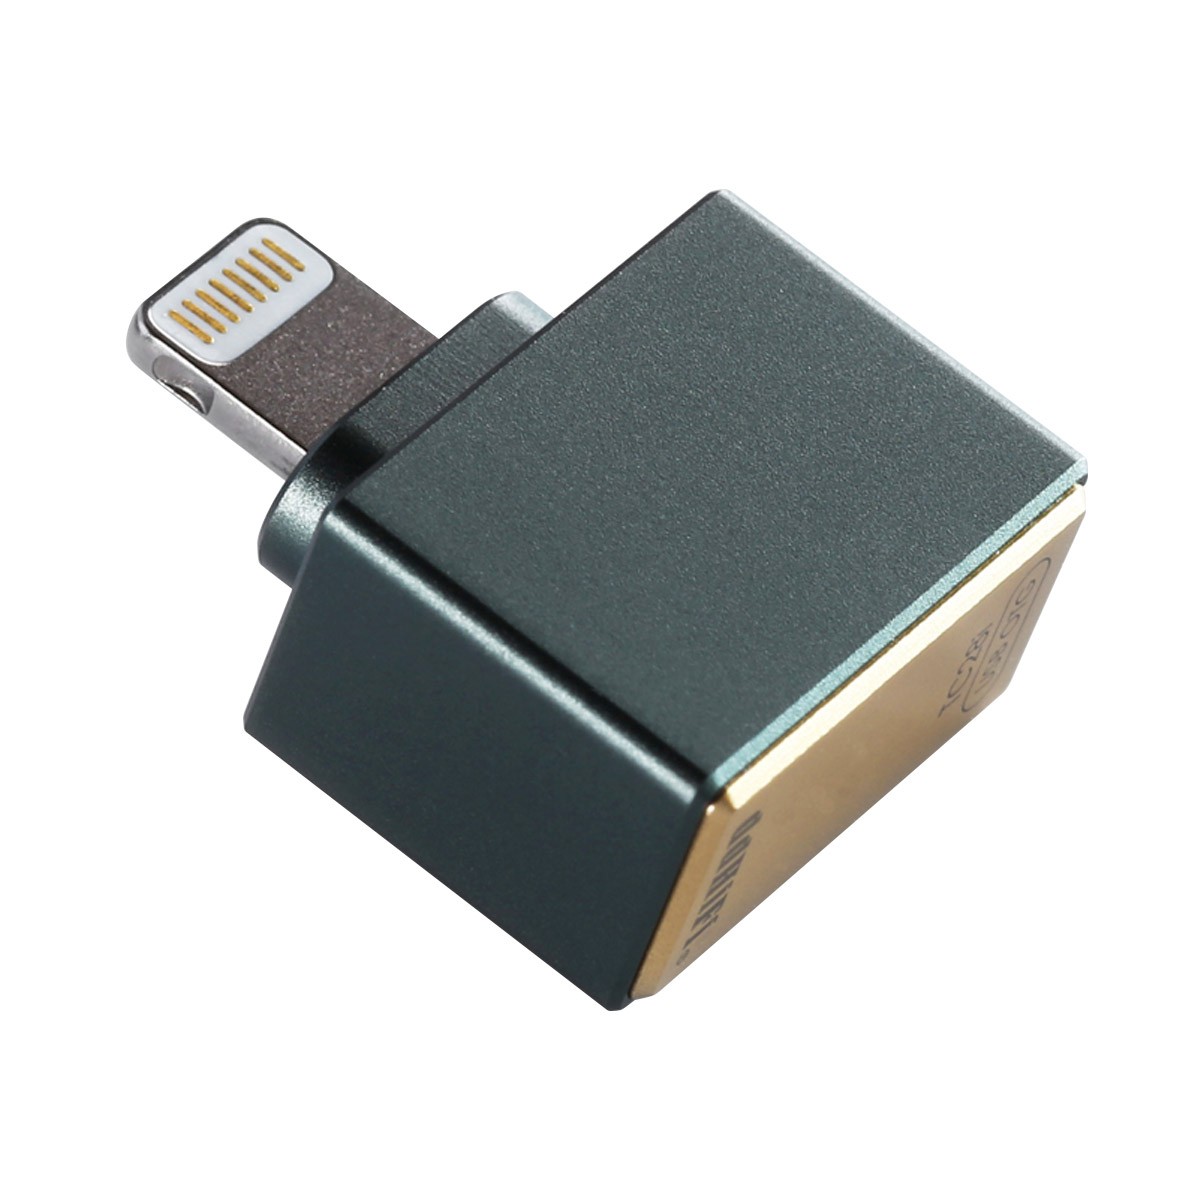 Audiophonics - Adaptateur USB A Femelle vers USB B Male